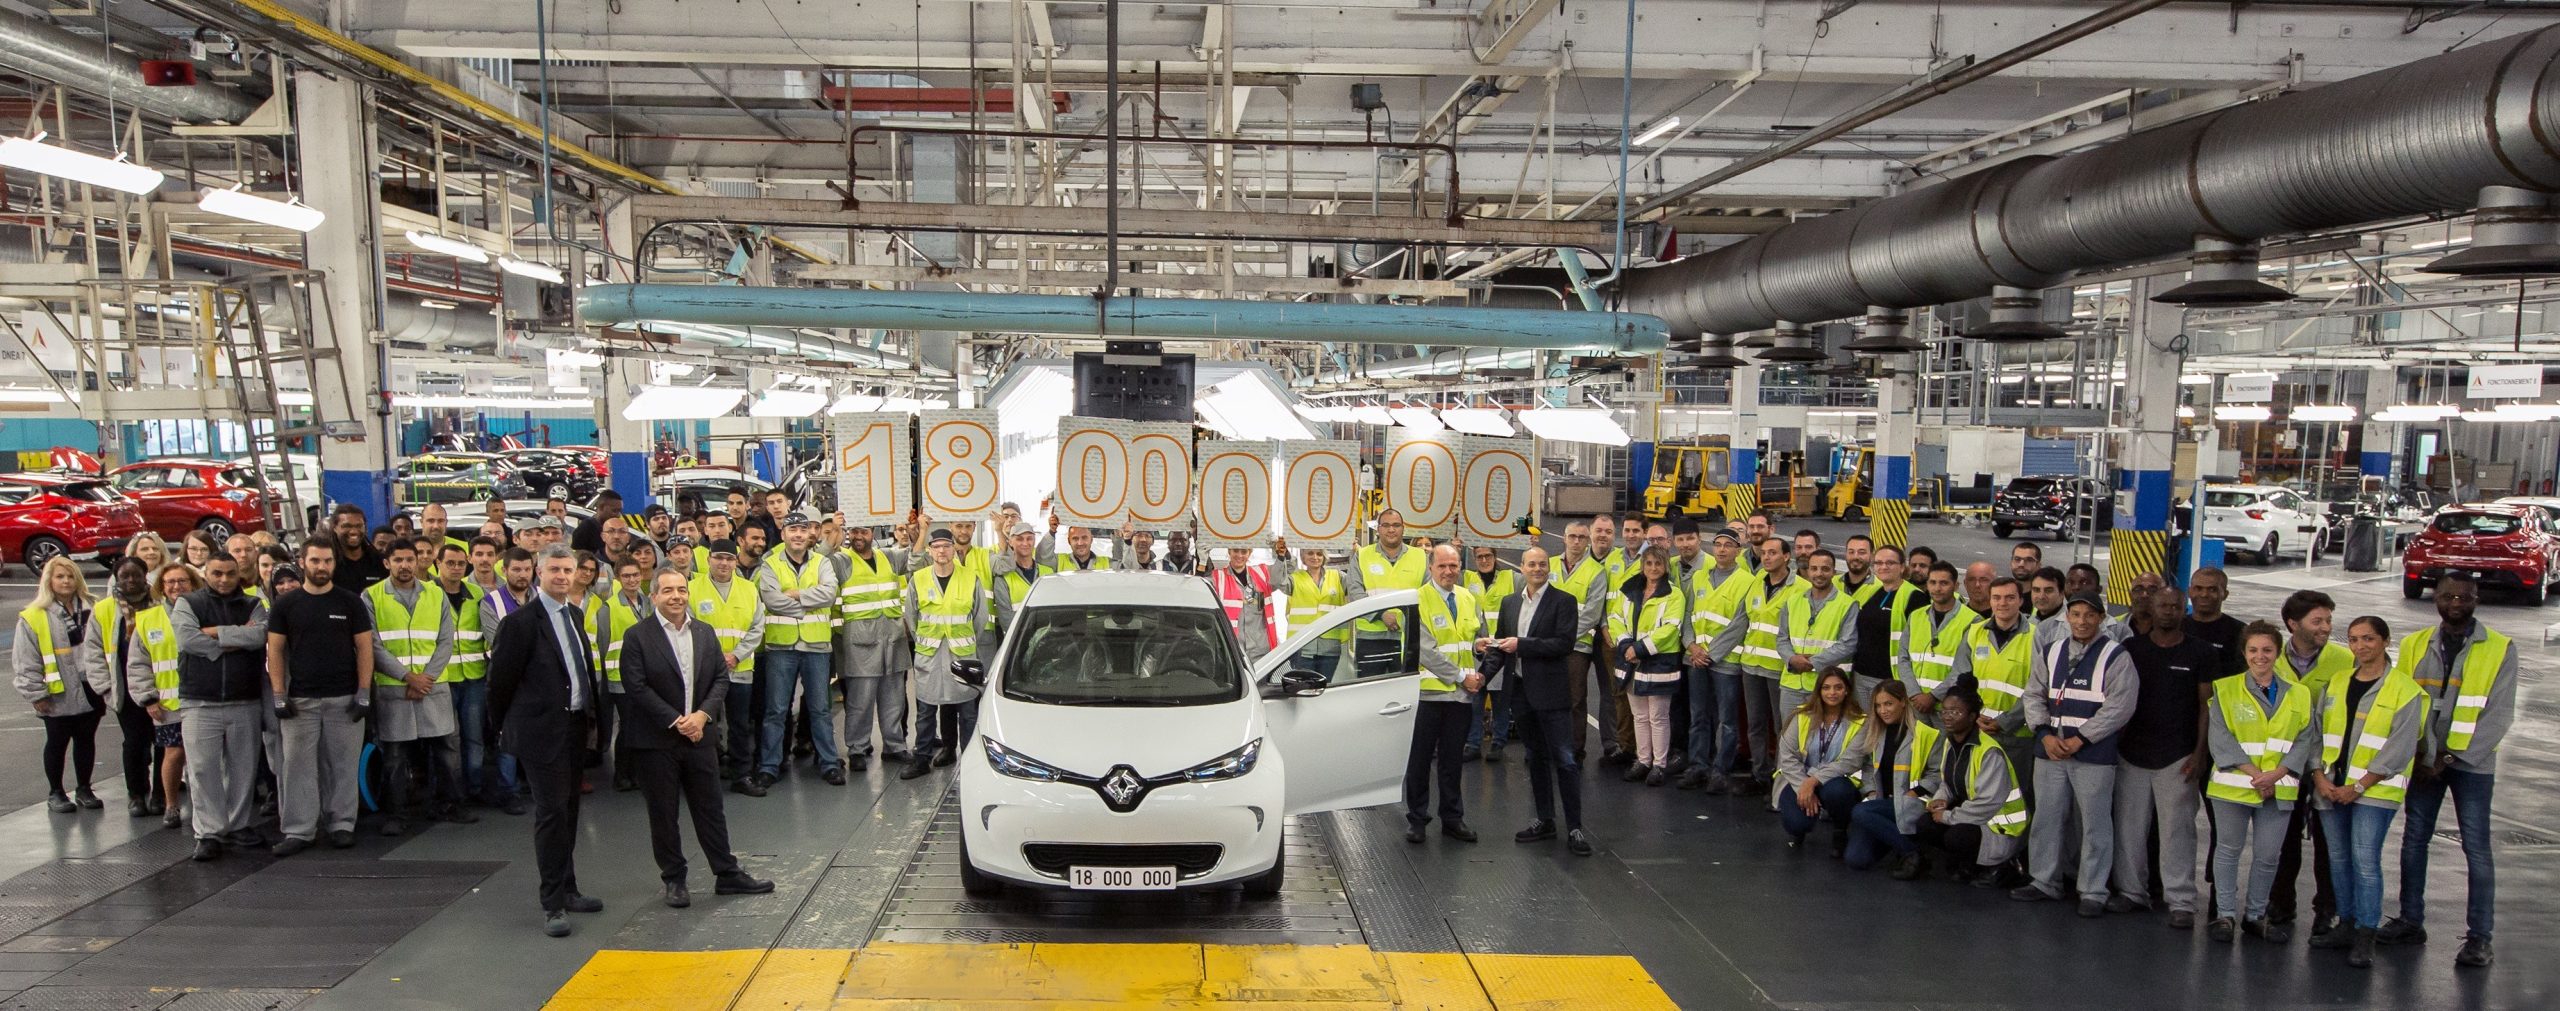 Η Renault επενδύει στα ηλεκτρικά επιβατικά και επαγγελματικά  οχήματα